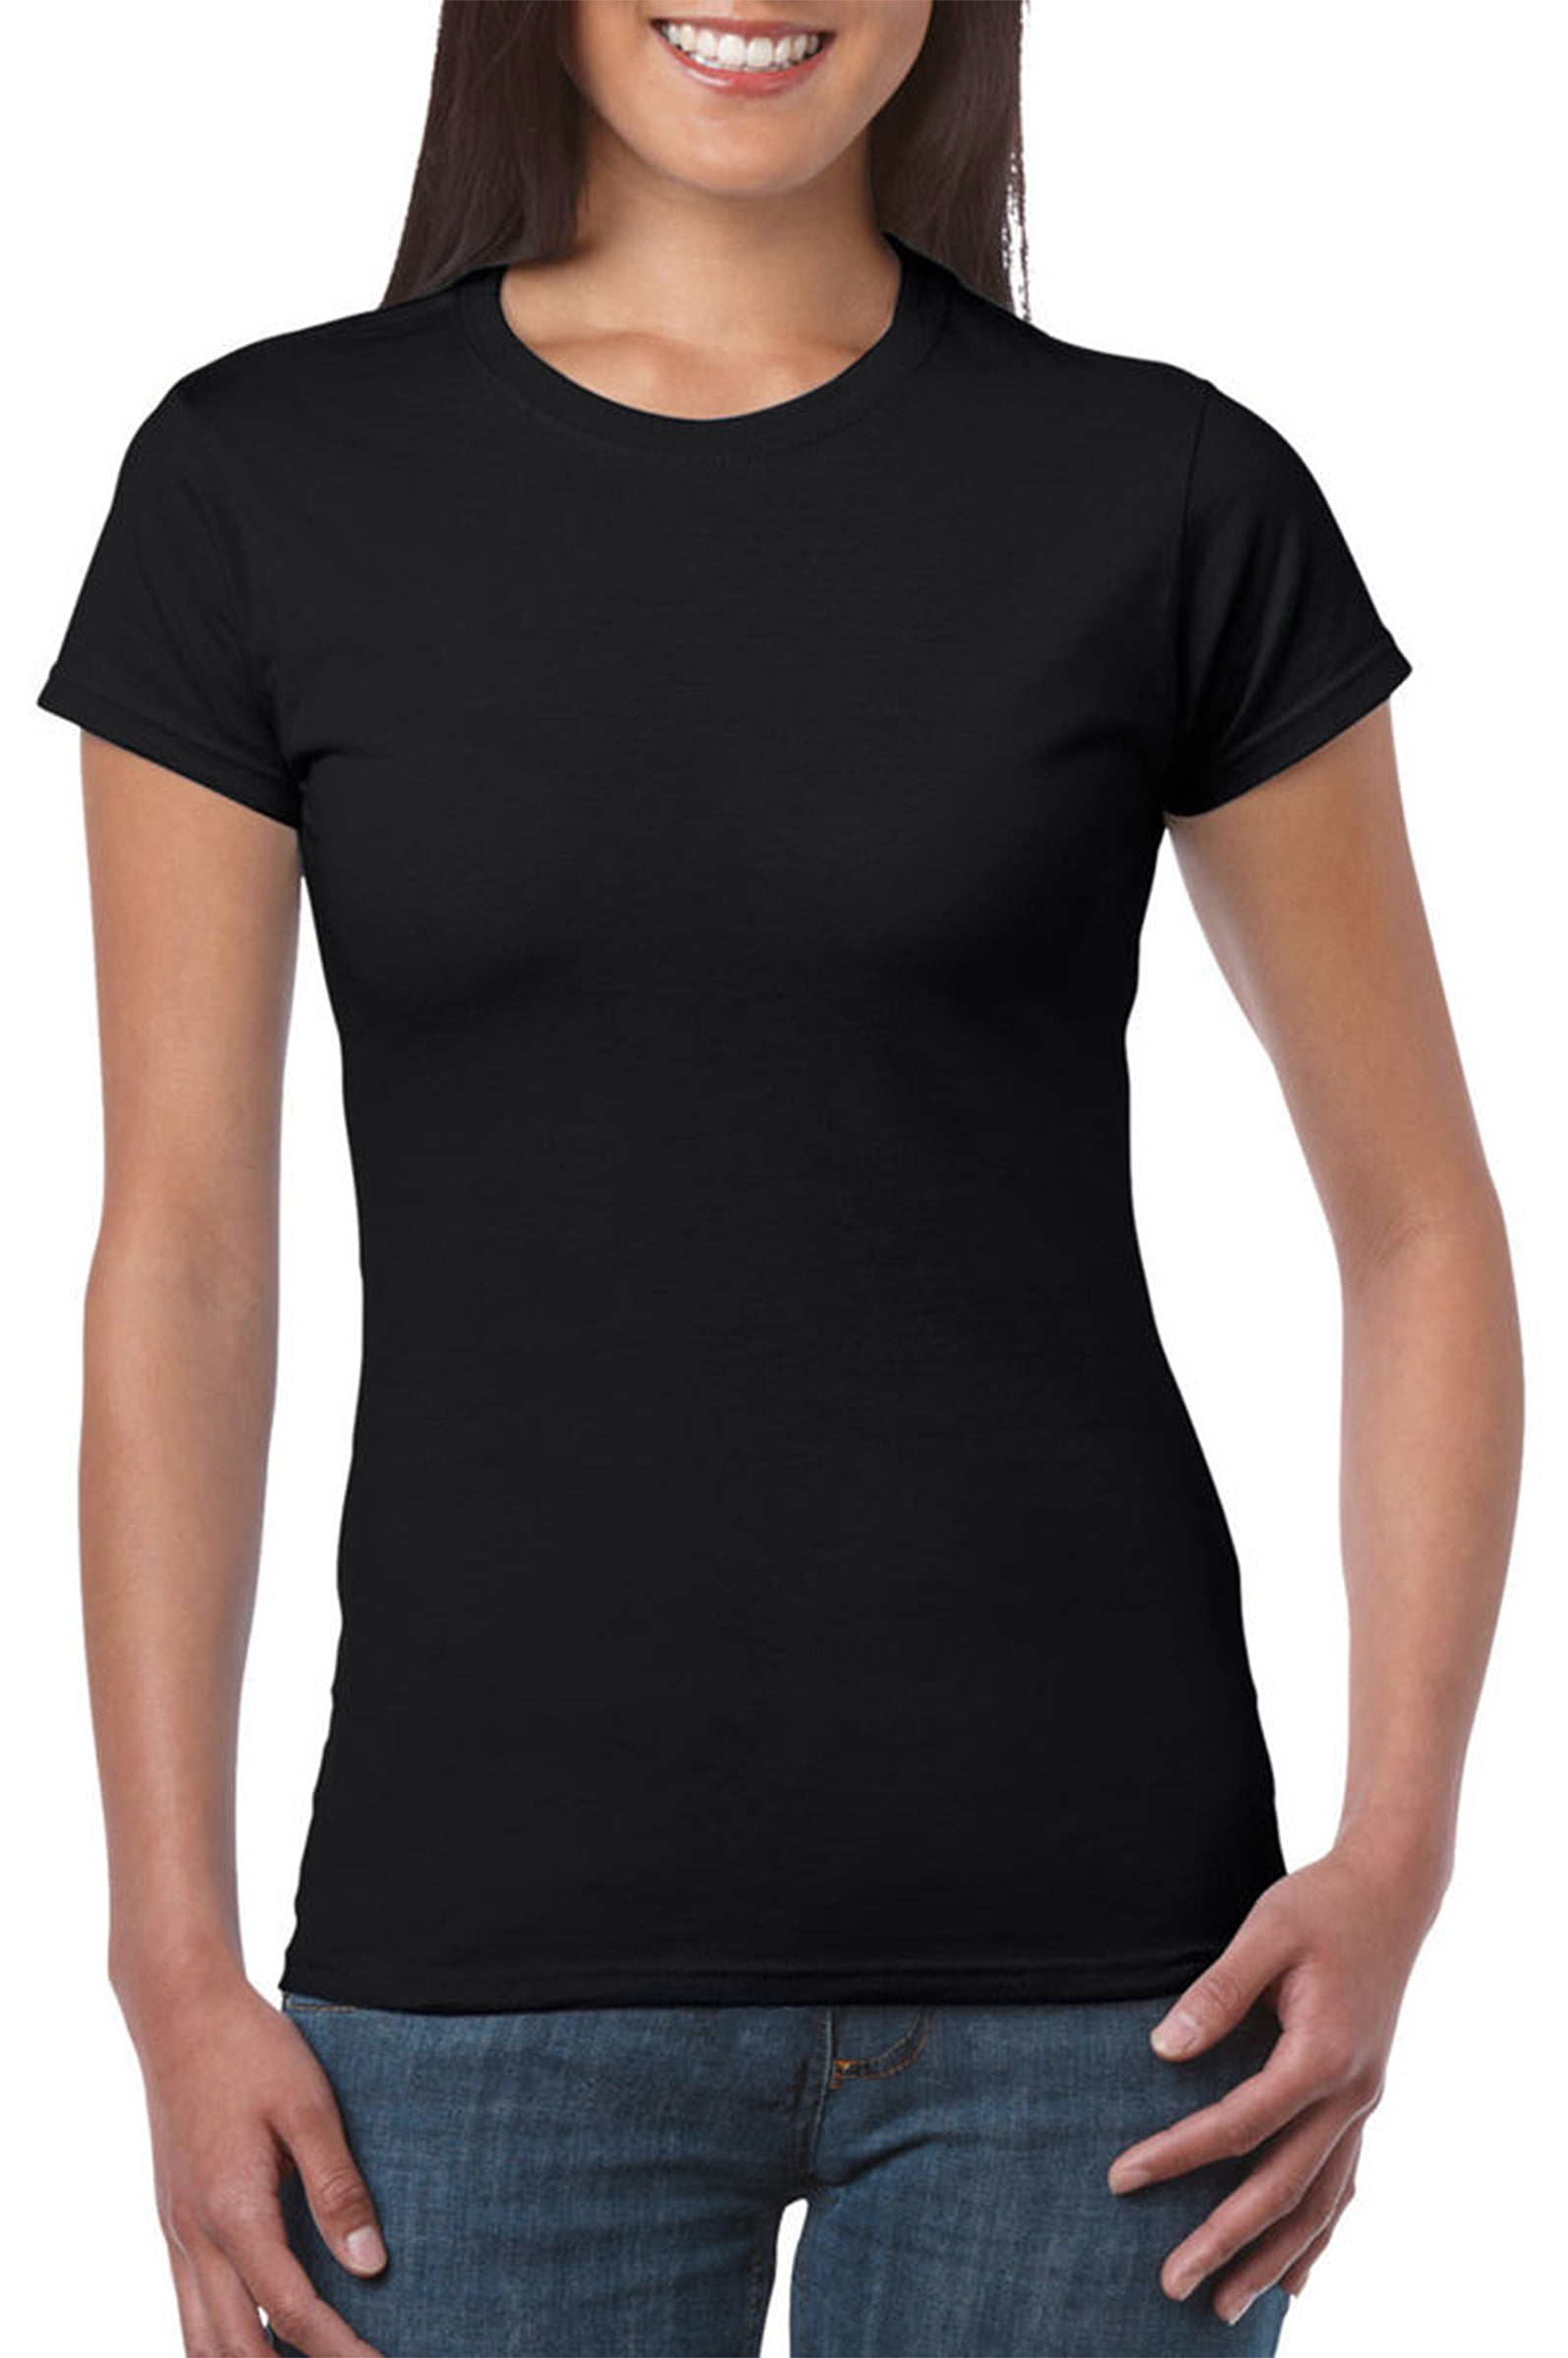 Womens Classic T Shirt Starbucks Tee Shirts Short Sleeve Tshirt Apparel for Women Tshirt Crew Neck Clothes Black 